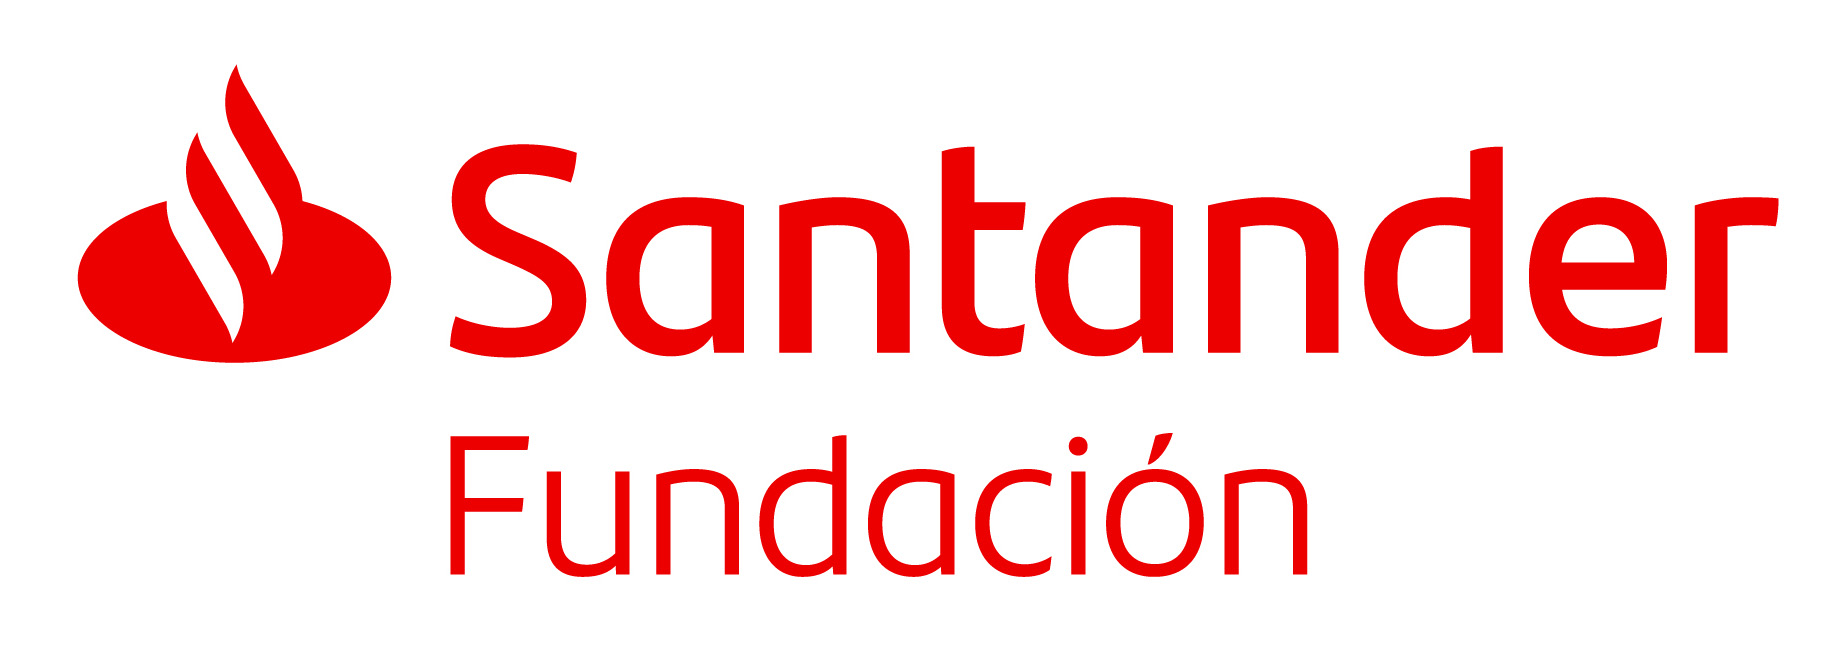 logo SANTANDER FUNDACION